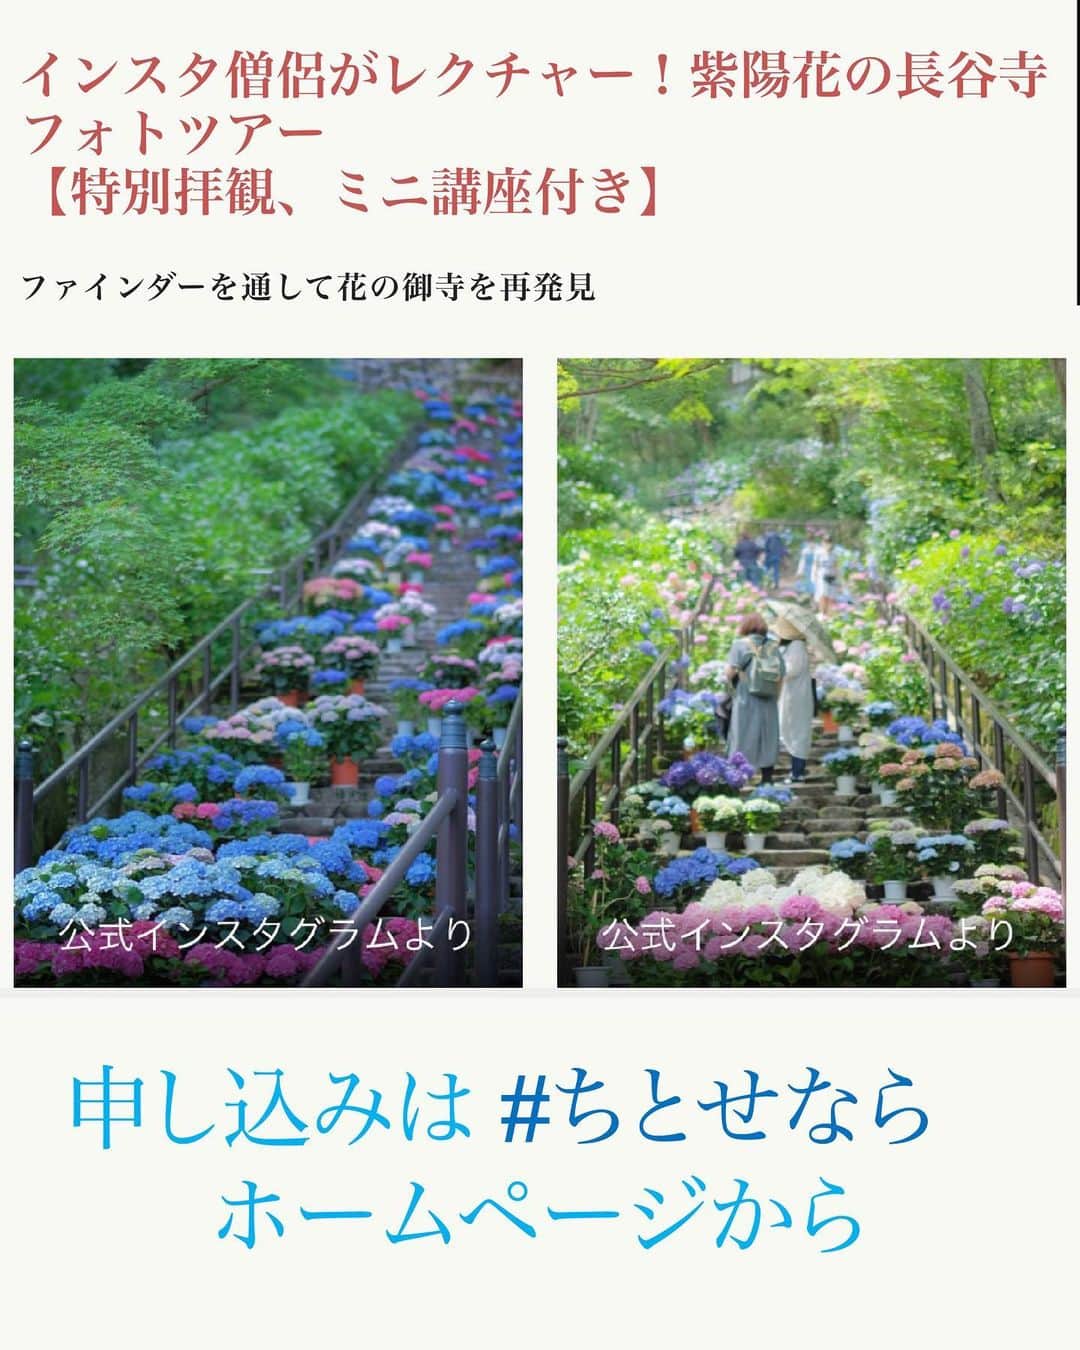 奈良 長谷寺 / nara hasederaのインスタグラム：「#紫陽花 が鮮やかに色づく6月17日(土) IGの中の人と長谷寺の#あじさい を写真に収めながら境内を散策するフォトツアーを開催します。奈良のちょっとマニアックなツアーを企画している@chitosenara_okashita #ちとせなら から申し込みが出来ます。  雨でも晴れでも美しい紫陽花を愛でながら長谷寺の解説と大きな観音さまを観じていただけます。  ※この投稿の紫陽花の写真は今年のではありません。  #長谷寺 #奈良長谷寺 #総本山長谷寺 #真言宗豊山派 #花の御寺 #奈良 #hasedera #hasederatemple #temple #japan #japanesetraditional #pilgrimage #nara #tourism #sightseeing #japanesetemple #西国三十三所 #霊場 #巡礼 #四寺巡礼 #長谷寺が好き #日本遺産 #観音さんさんサイコク巡礼 #千年巡礼」